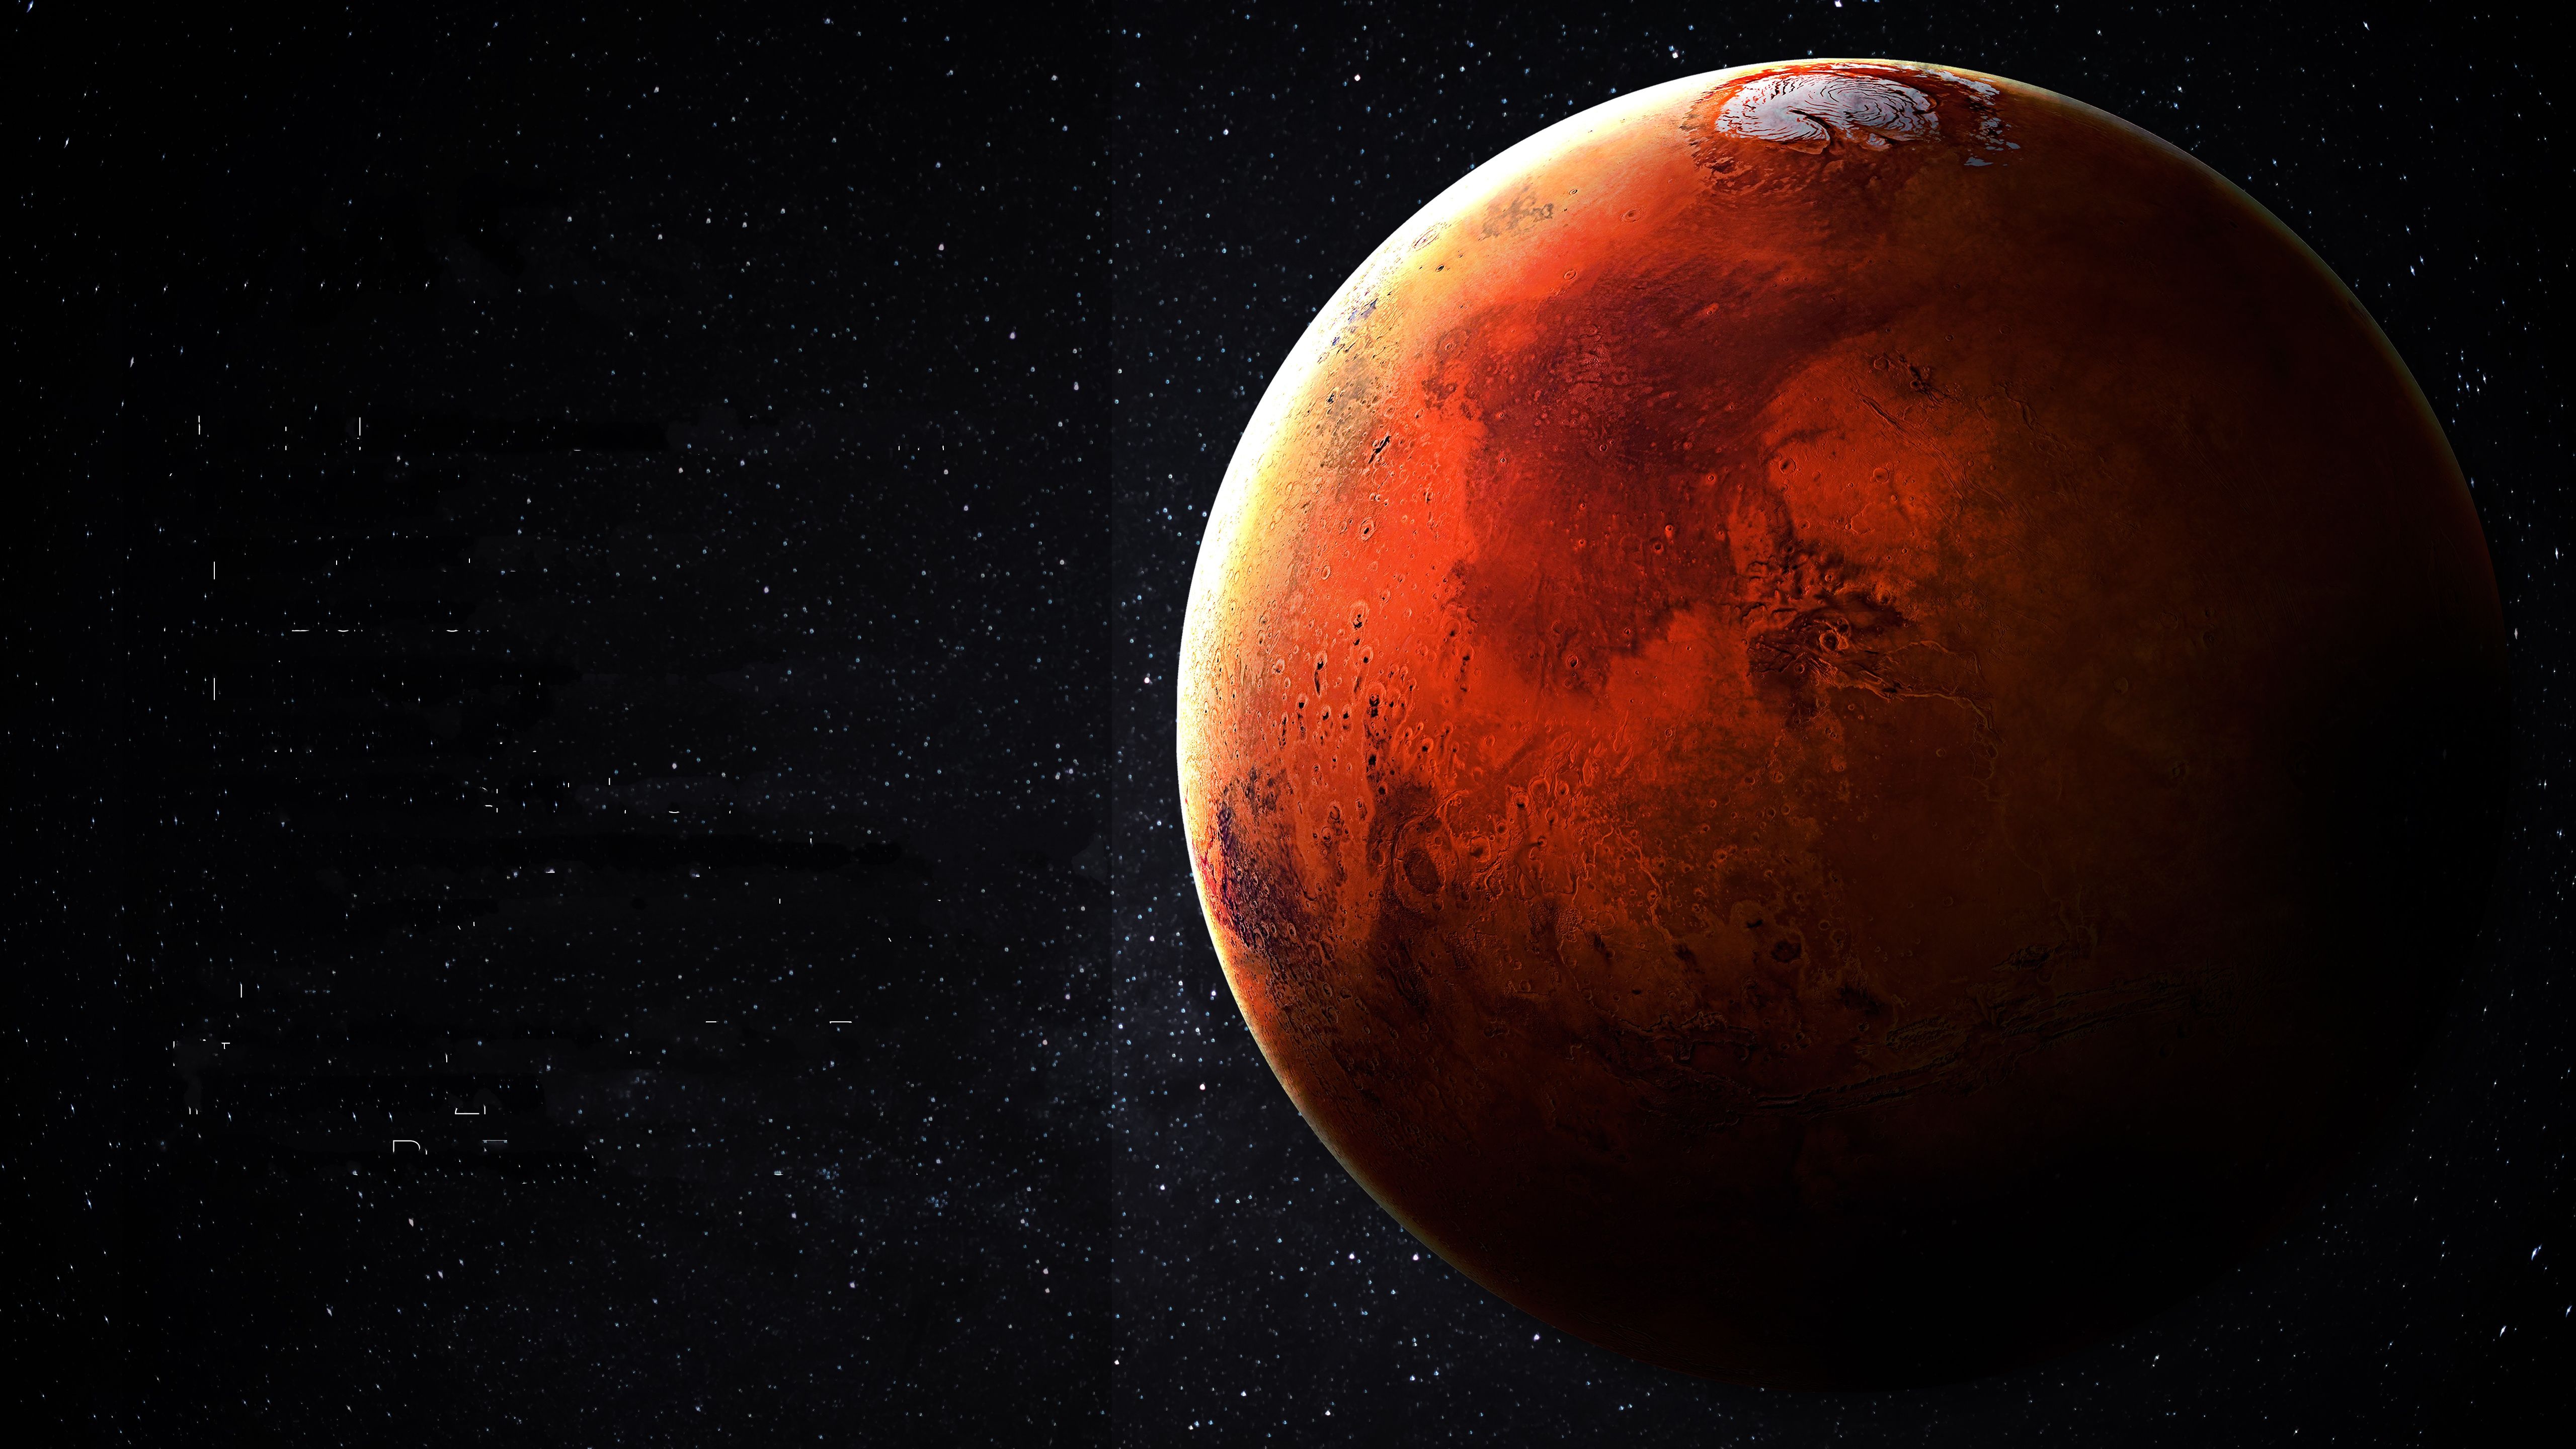 تصویر پروفایل دیدنی سیاره مریخ با زمینه مشکی پرستاره